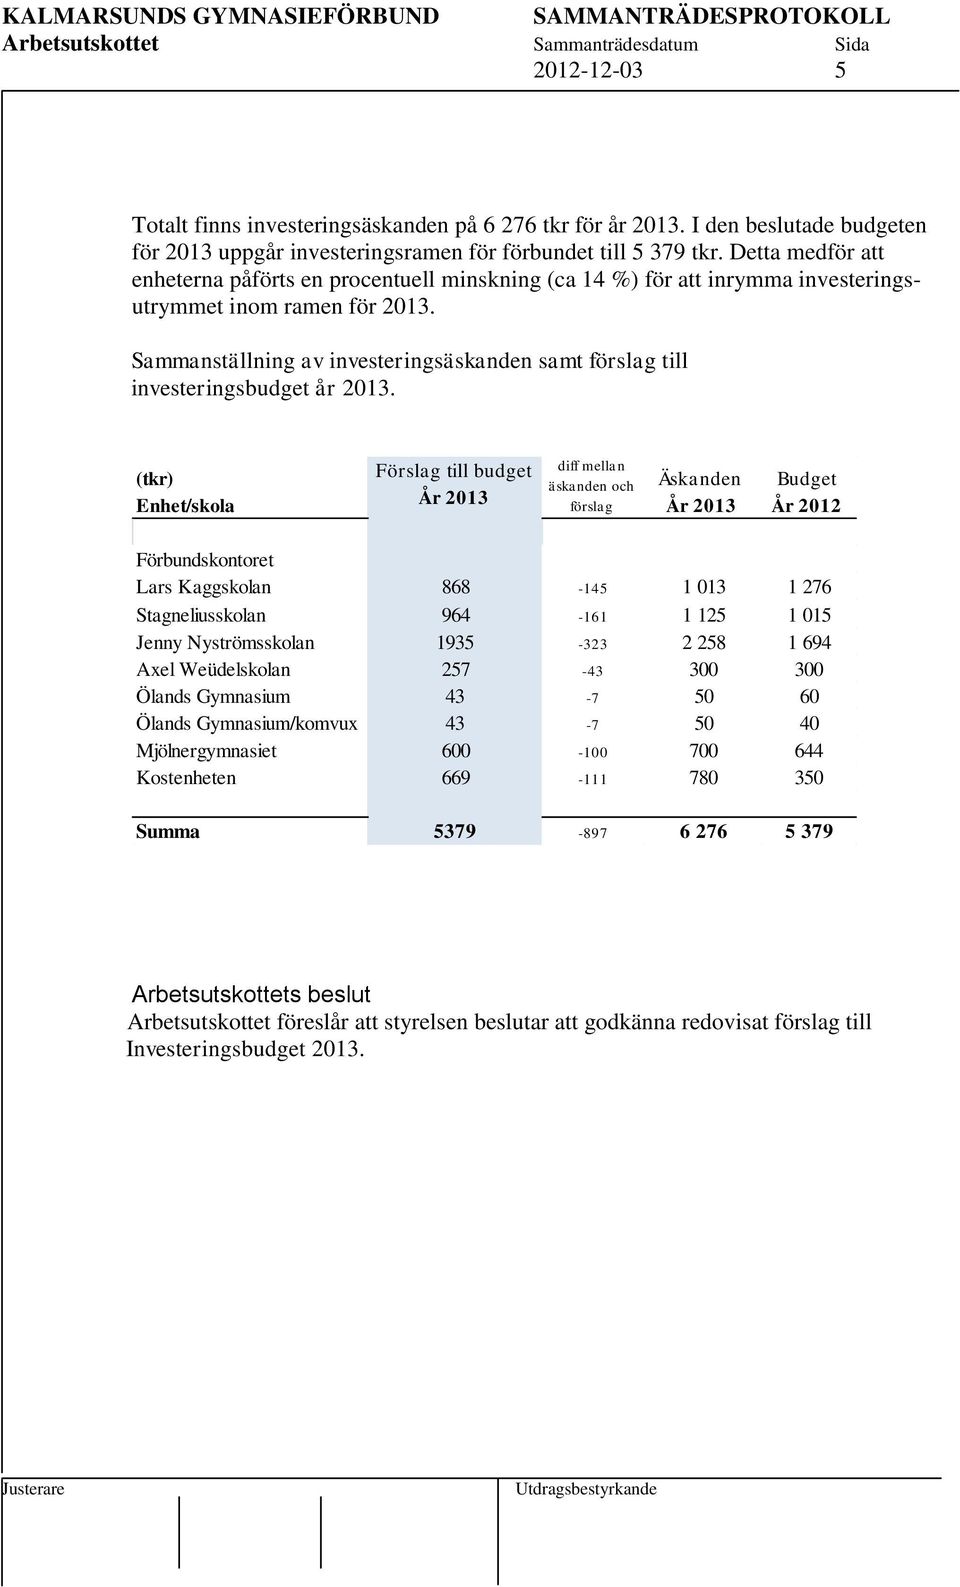 Sammanställning av investeringsäskanden samt förslag till investeringsbudget år 2013.